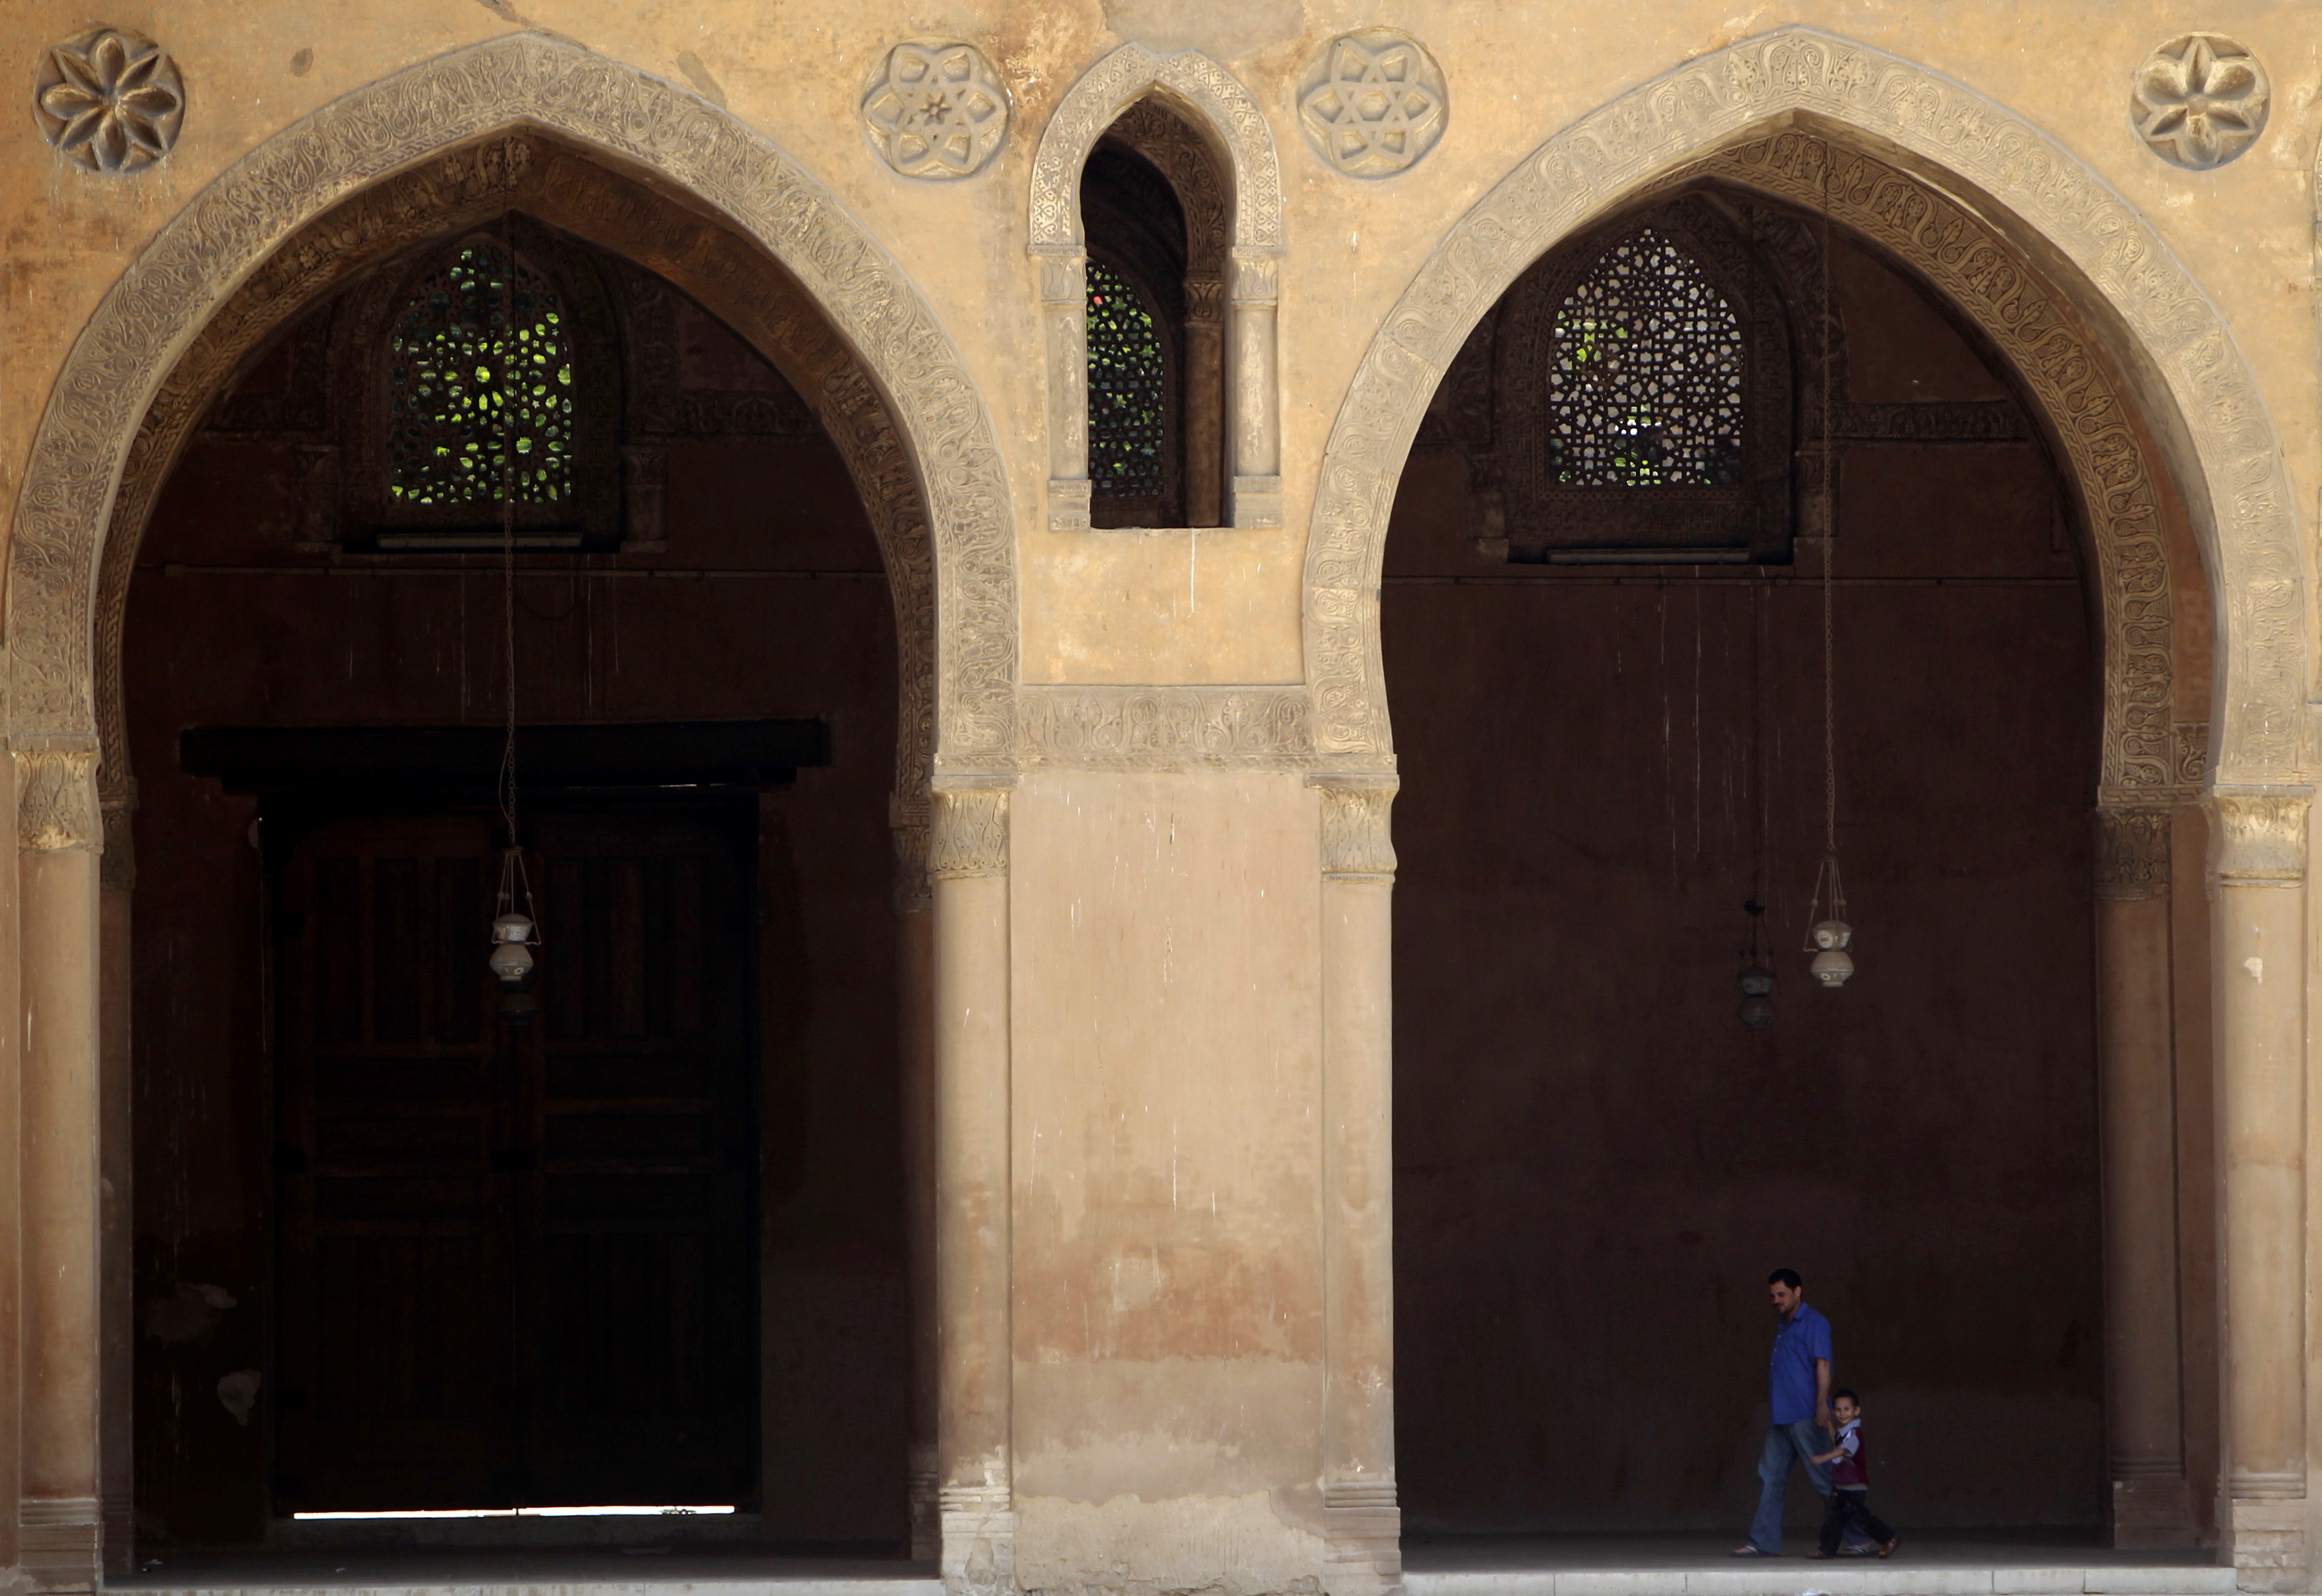 La mosquée Ibn Touloun dans le vieux Caire, construite en 897, est l’une des plus anciennes et plus grandes mosquées au monde. Photographiée en juillet 2012 (Reuters)